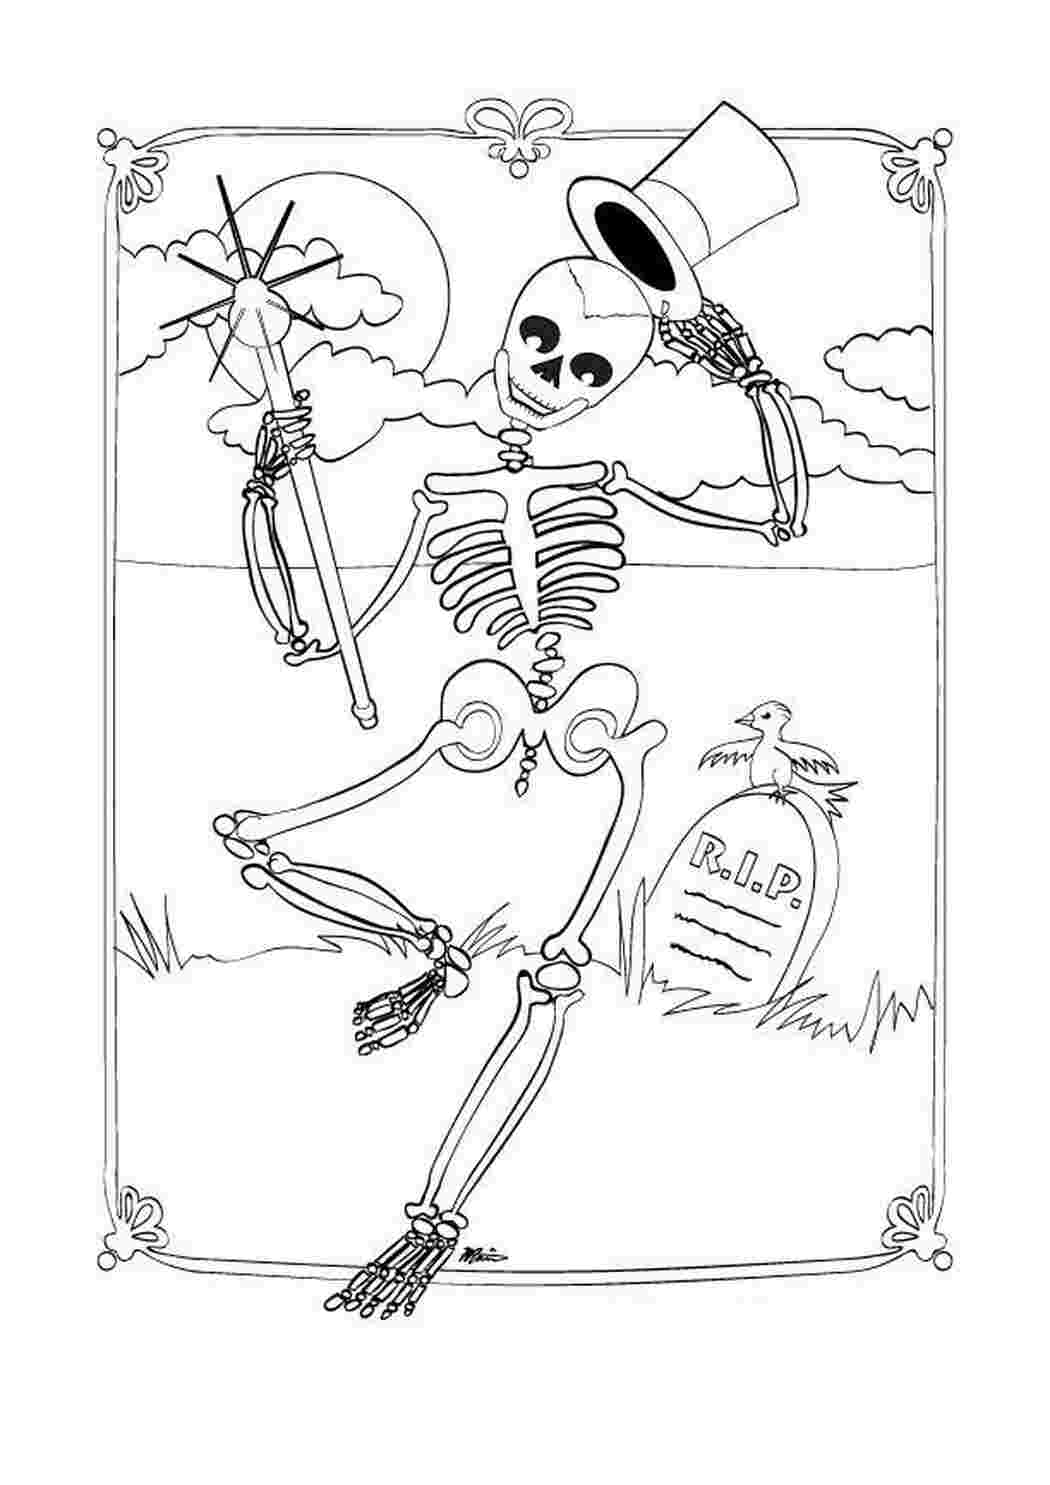 Джек скелет для разукрашивания